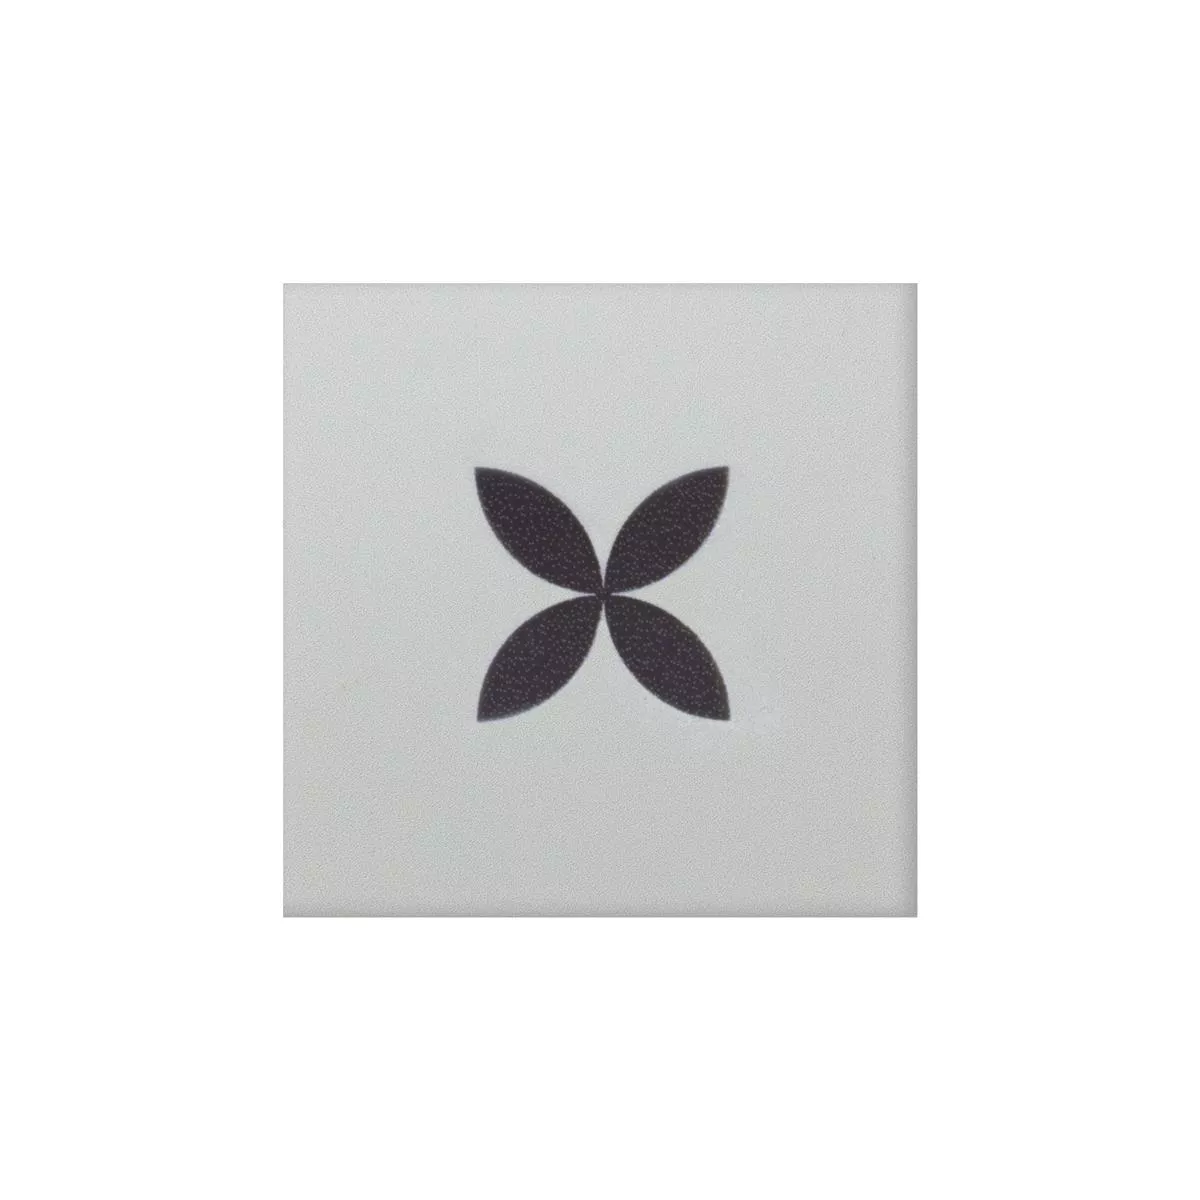 Gres Płytki Genexia Czarny Biały Decor 4 Rozeta  4,6x4,6cm